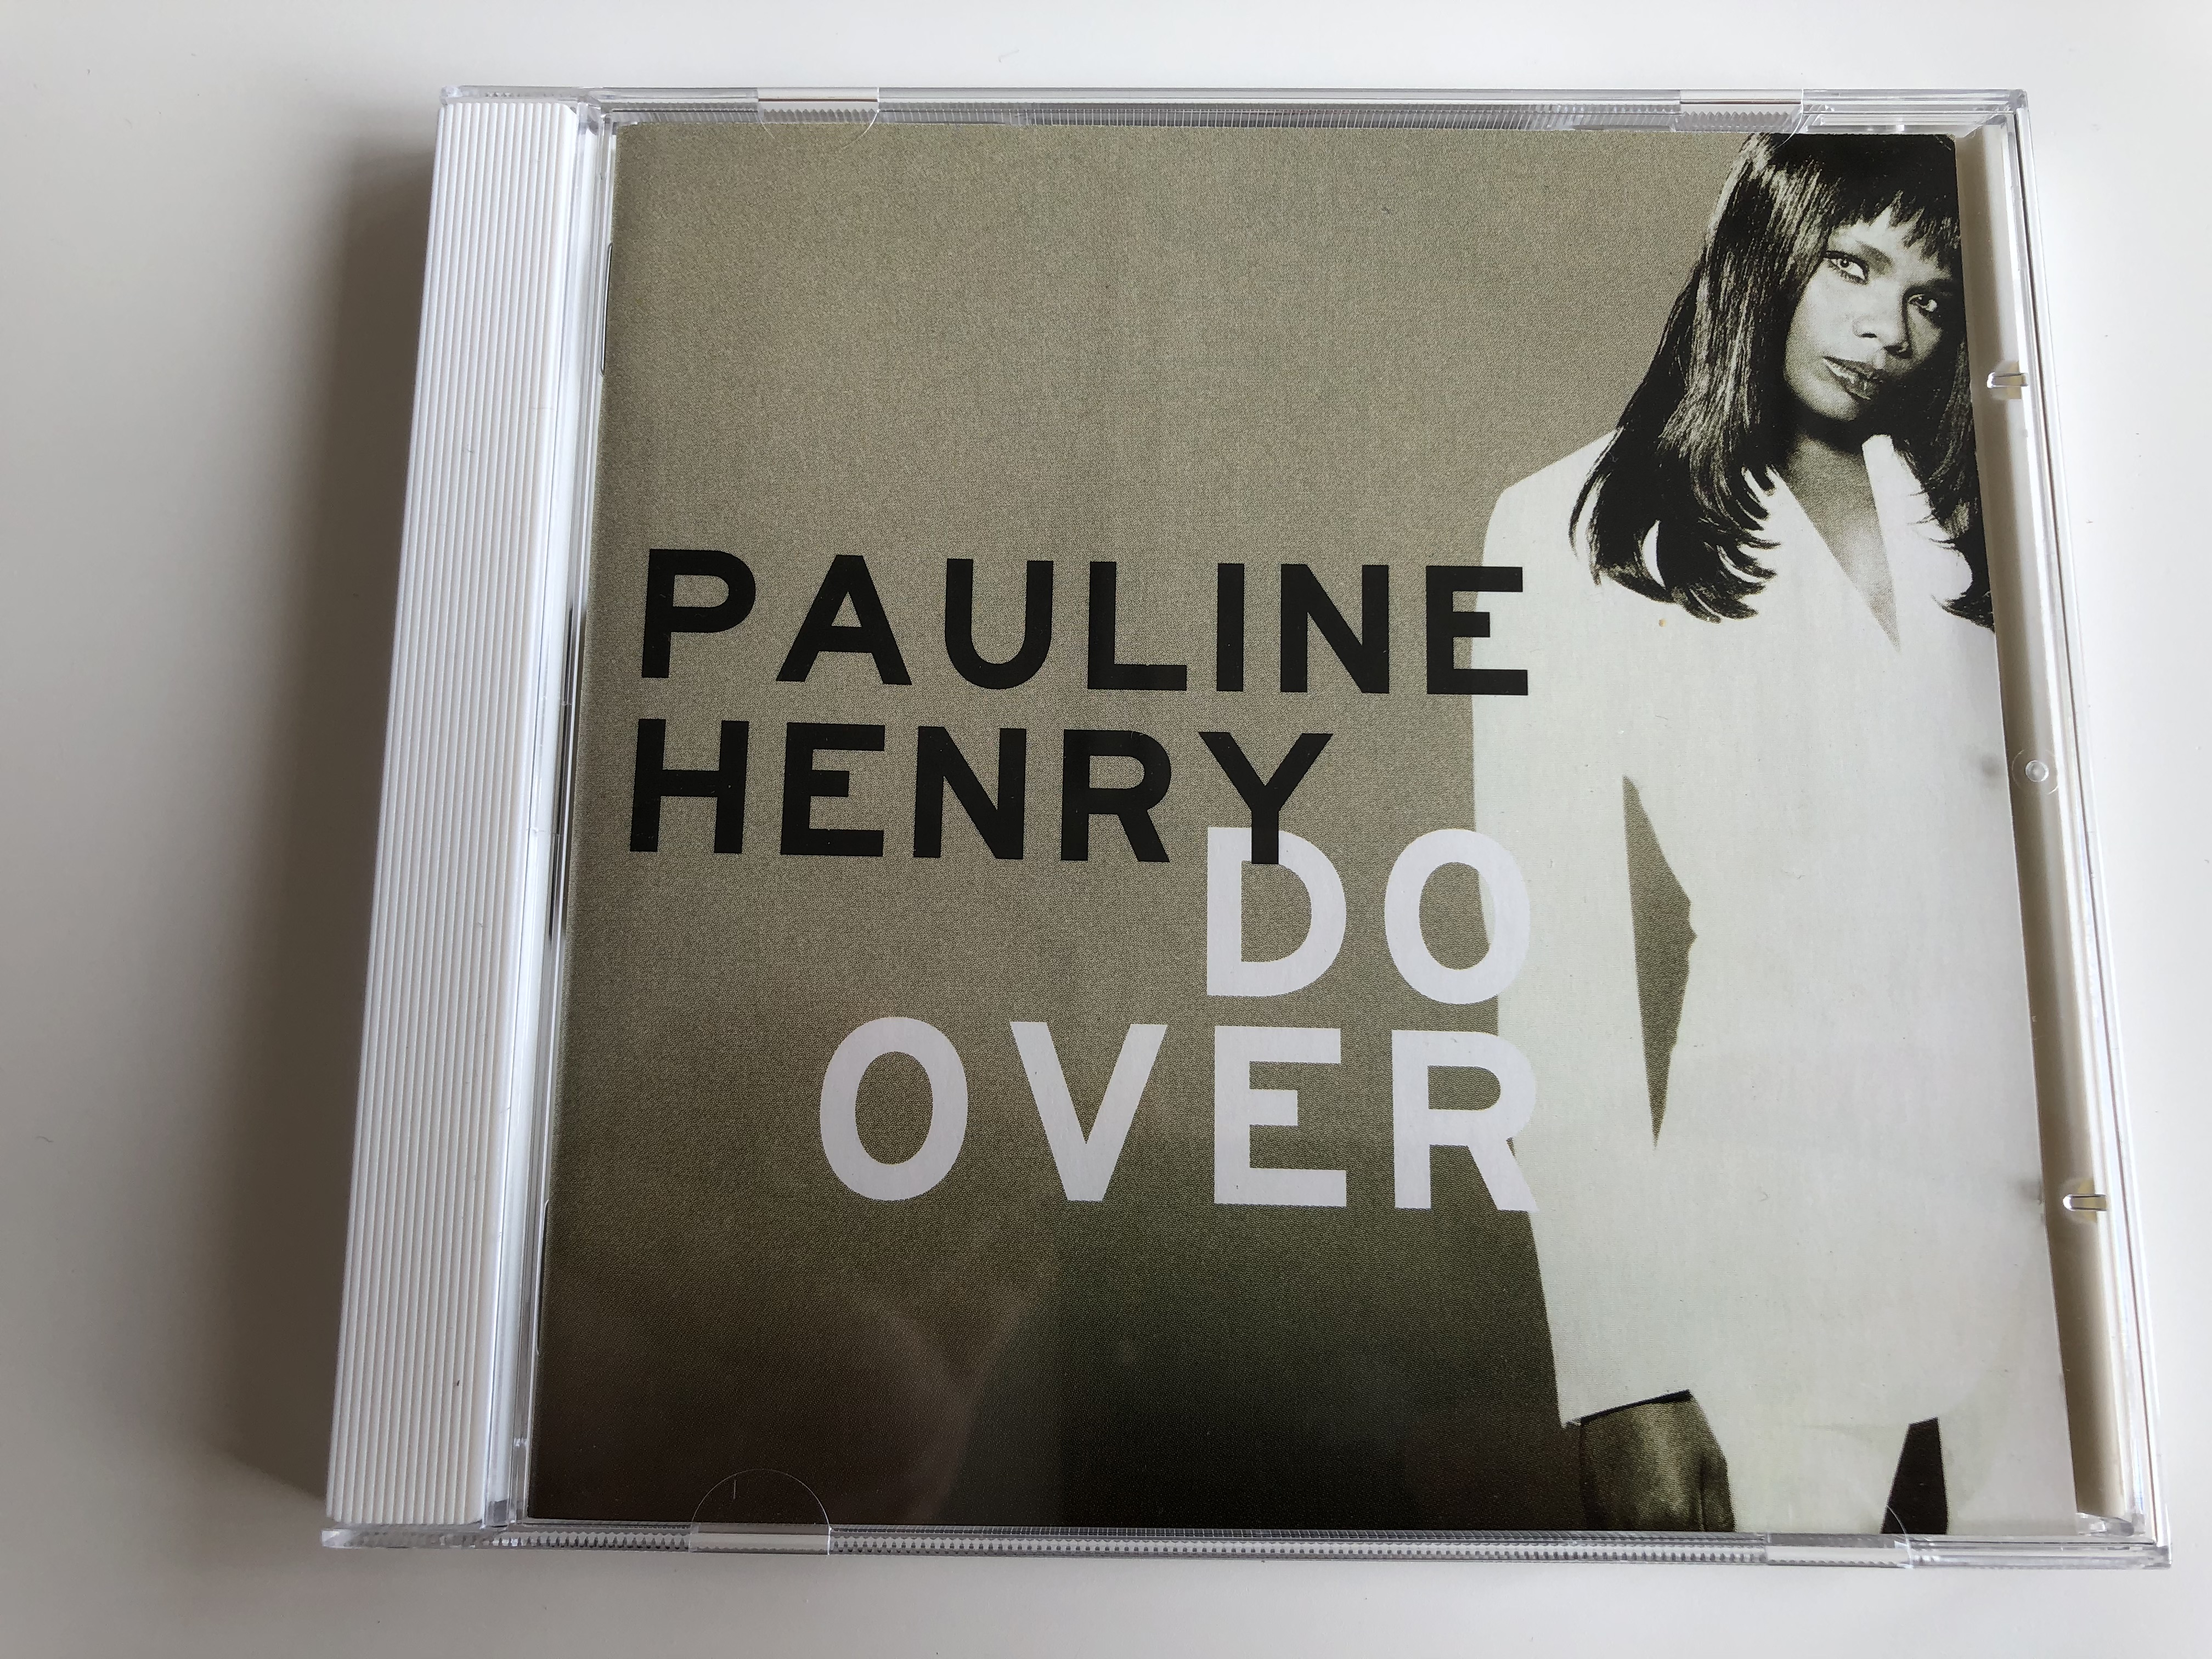 pauline-henry-do-over-sony-soho-square-audio-cd-1996-stereo-484058-2-1-.jpg